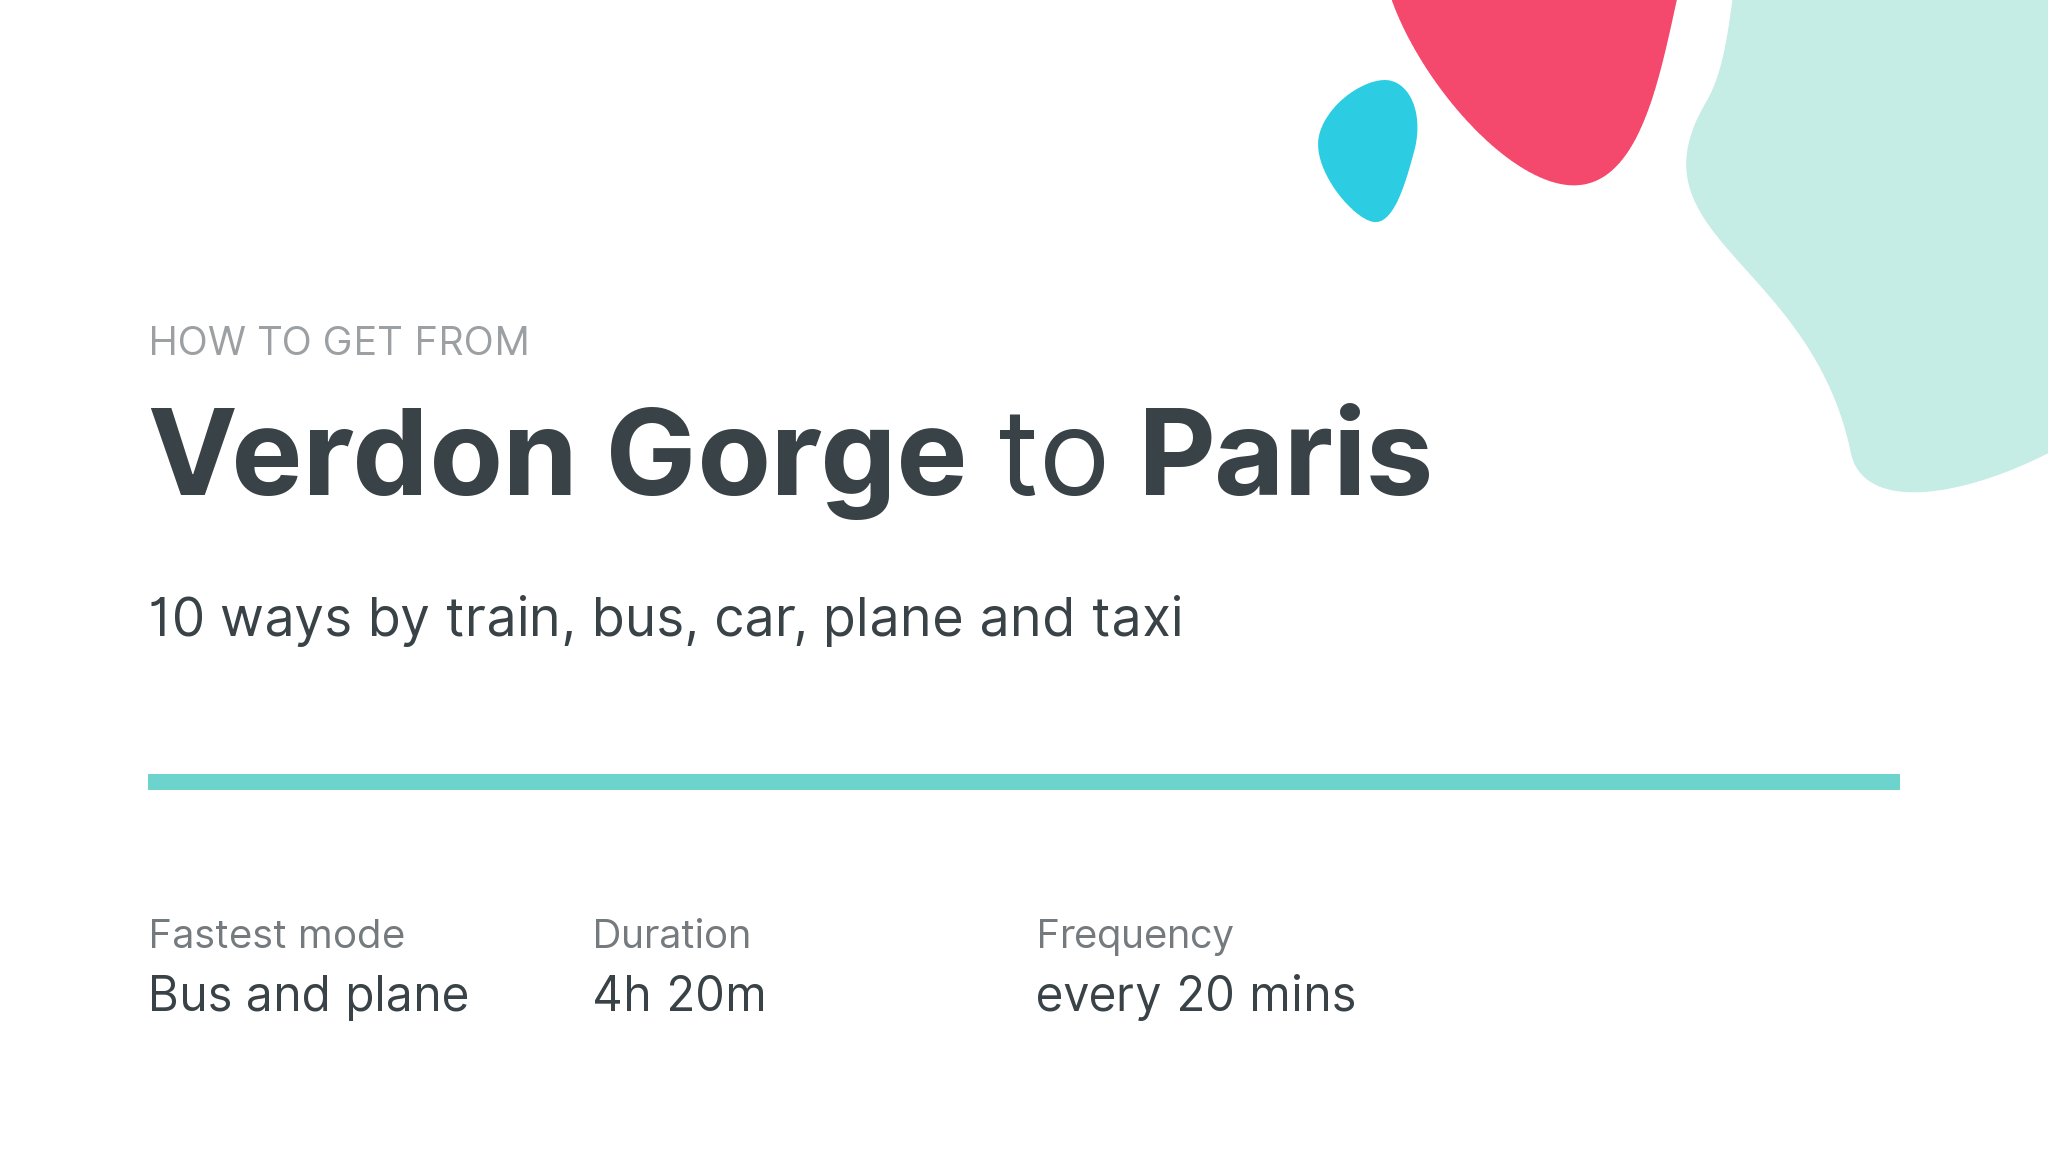 How do I get from Verdon Gorge to Paris